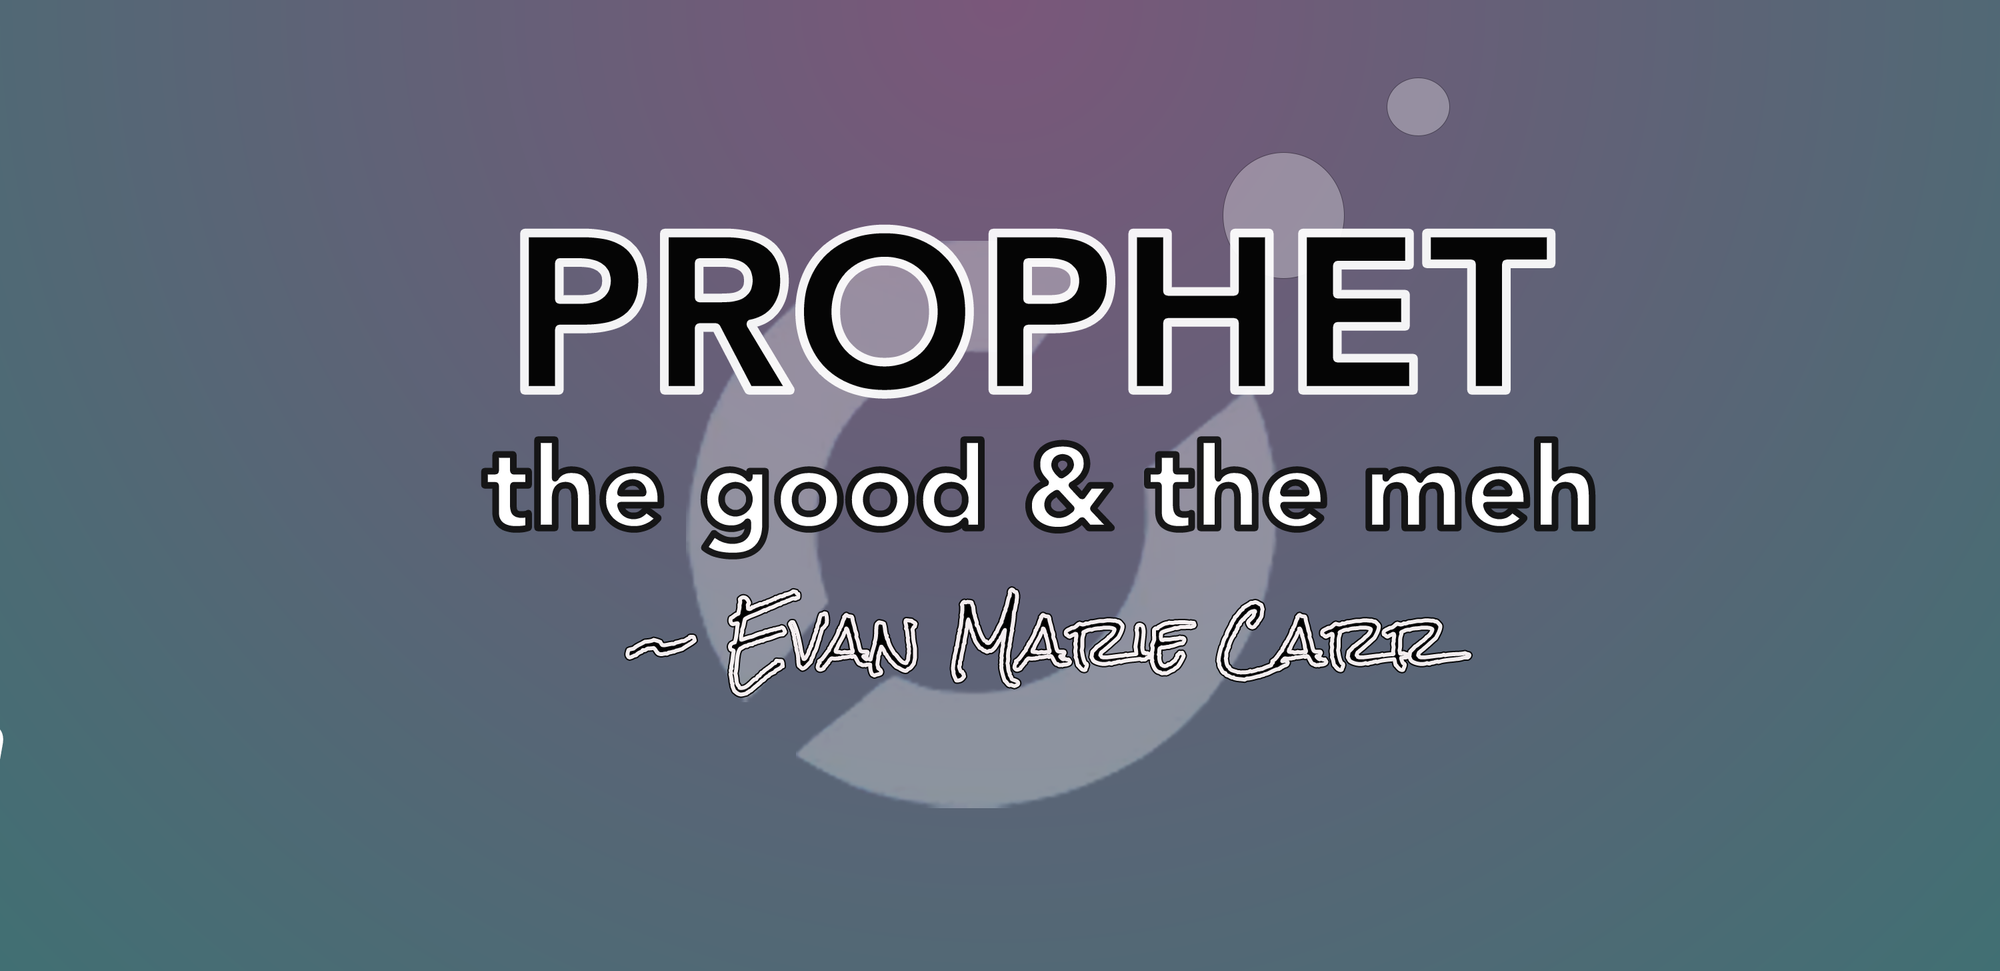 🔭 PROPHET: the good & the meh